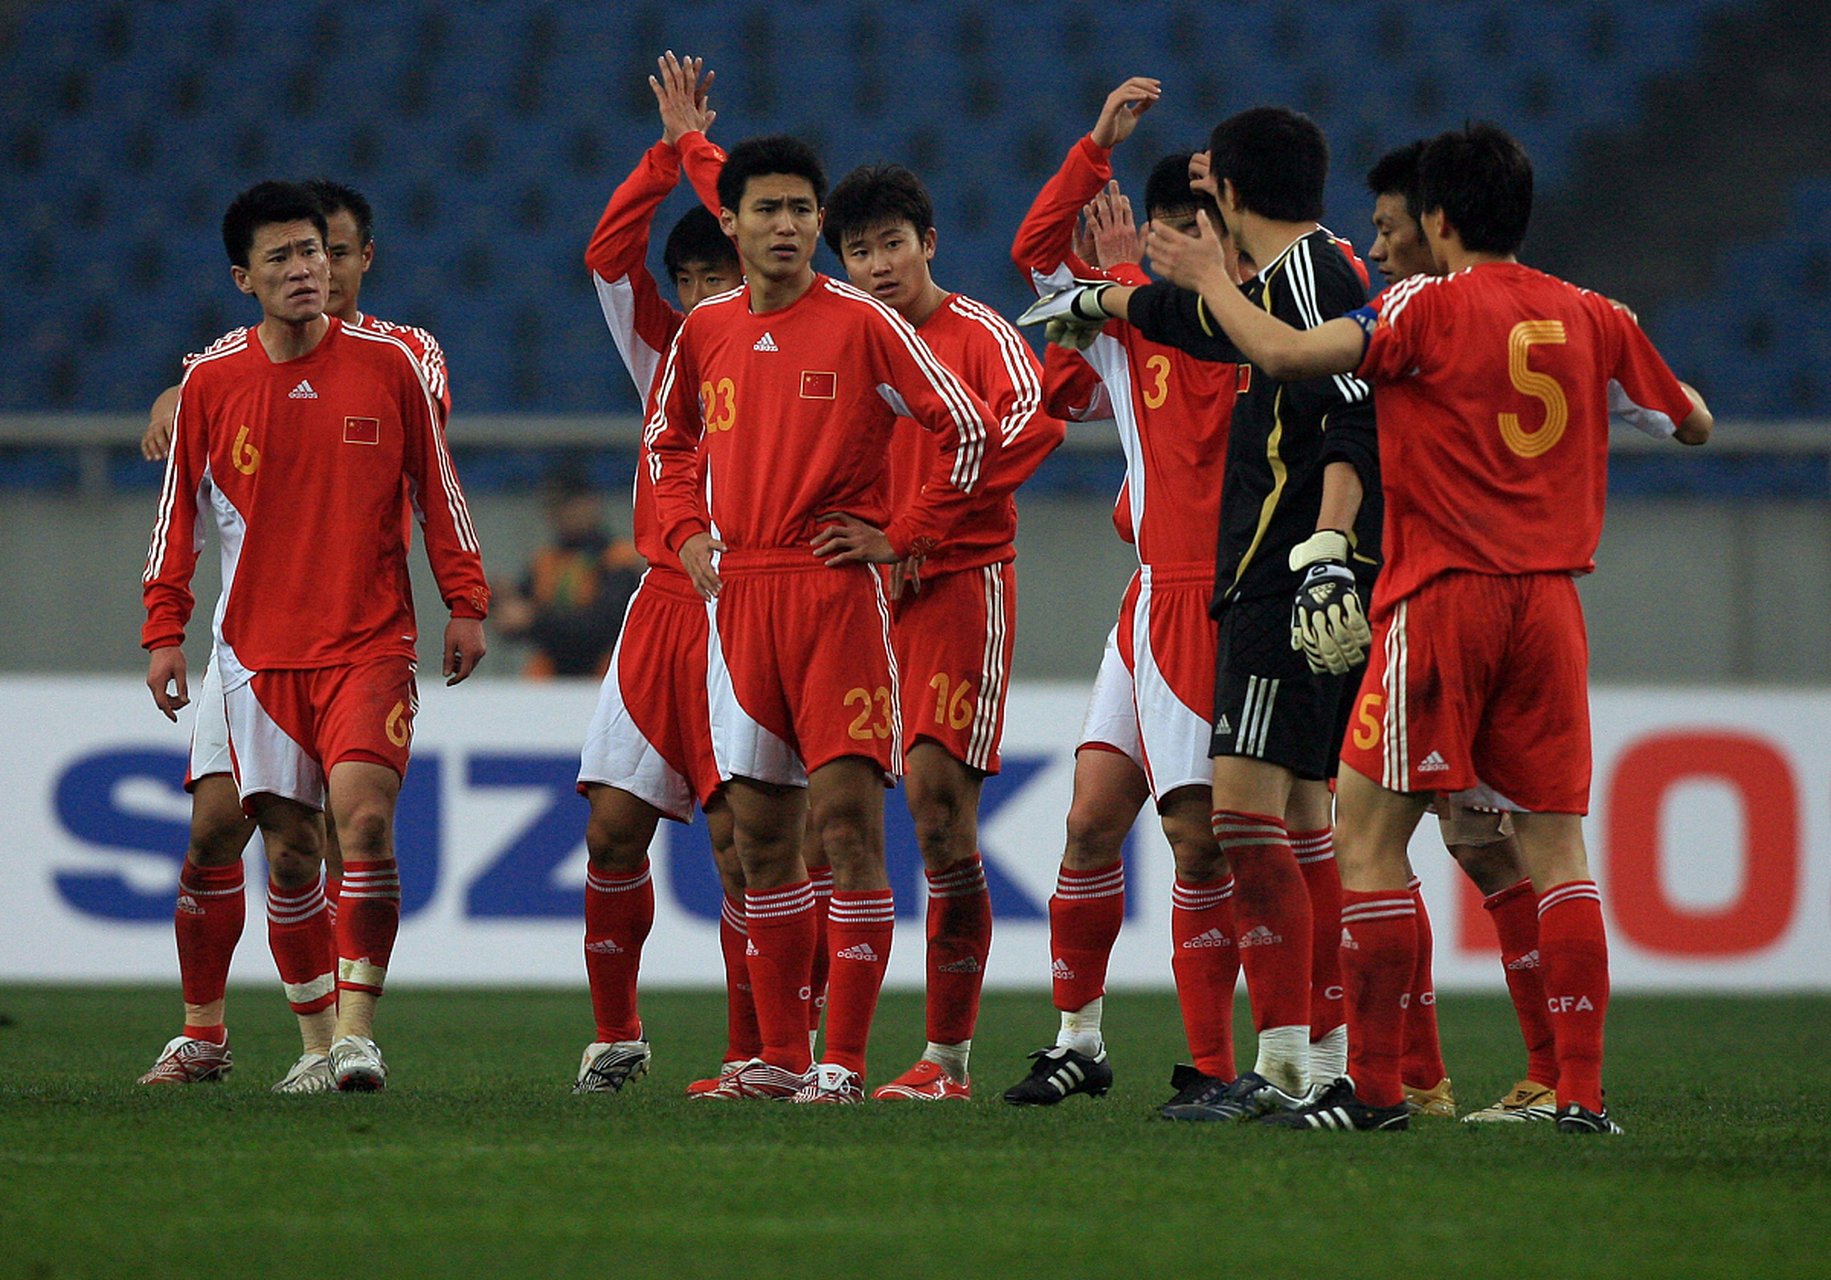 中国足球何日出头图片